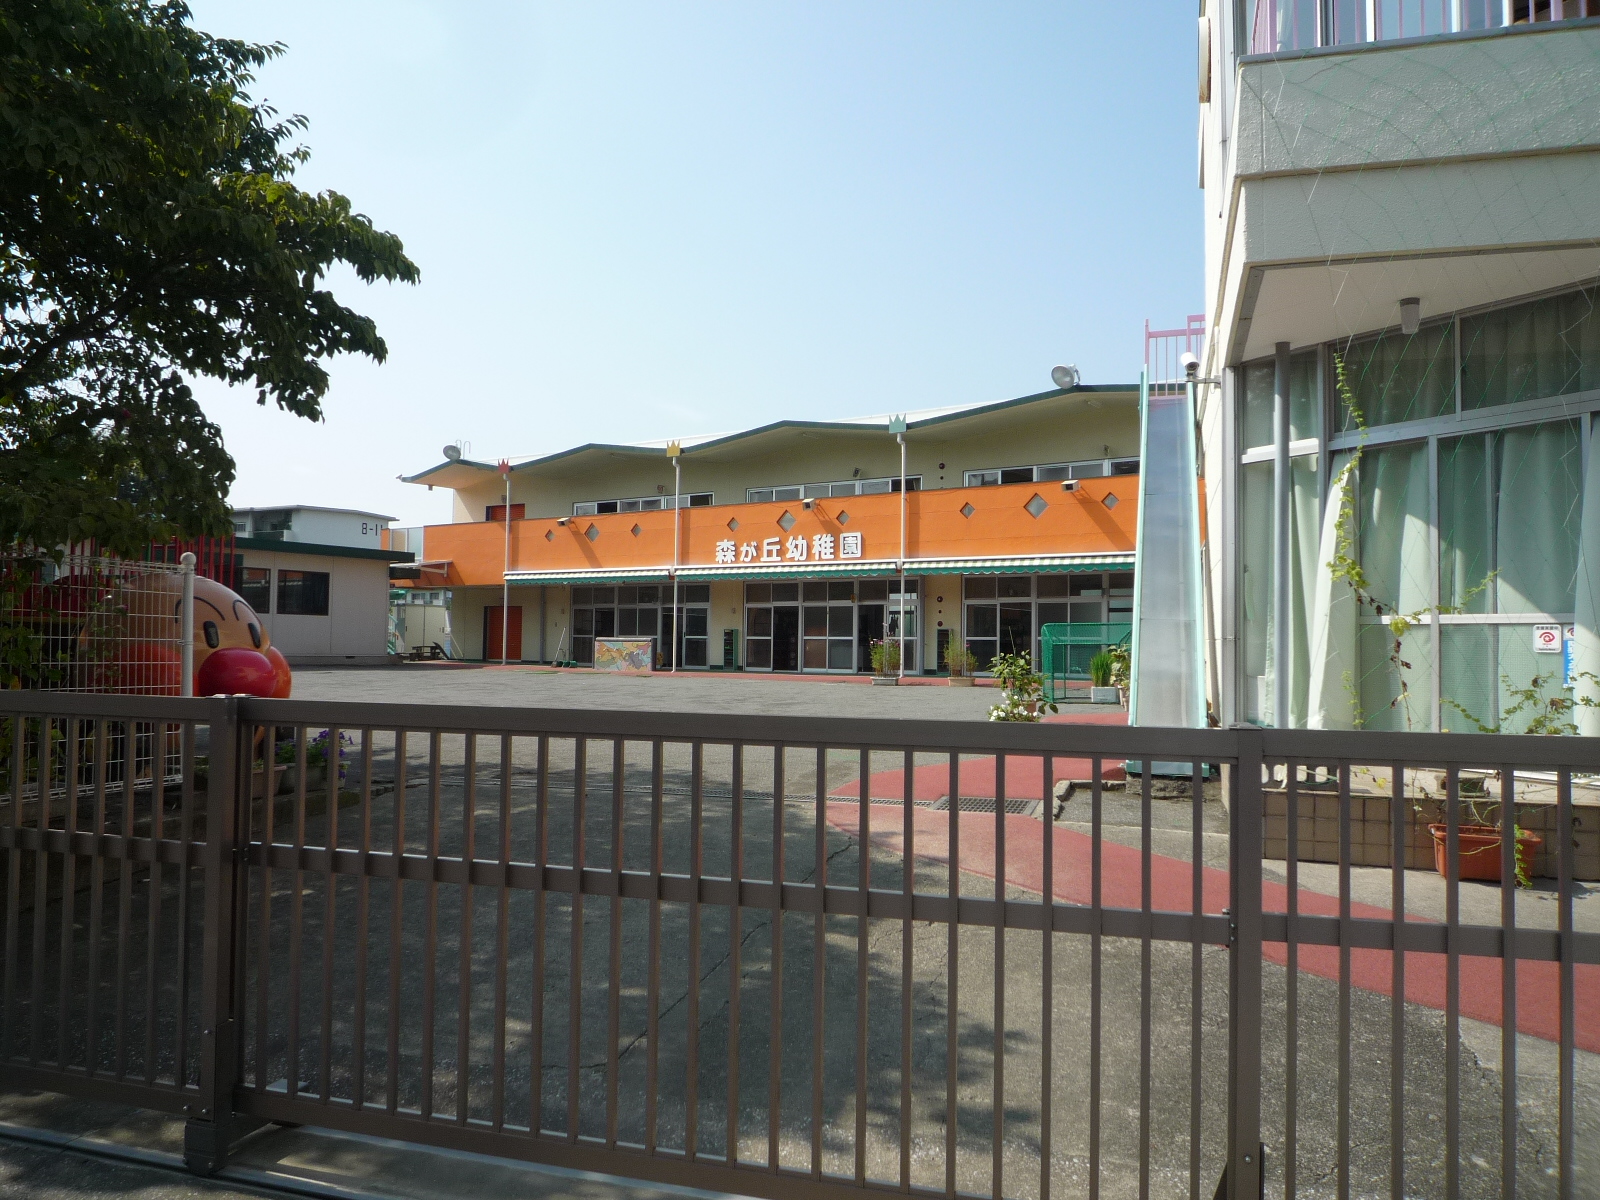 kindergarten ・ Nursery. Morigaoka kindergarten (kindergarten ・ 50m to the nursery)